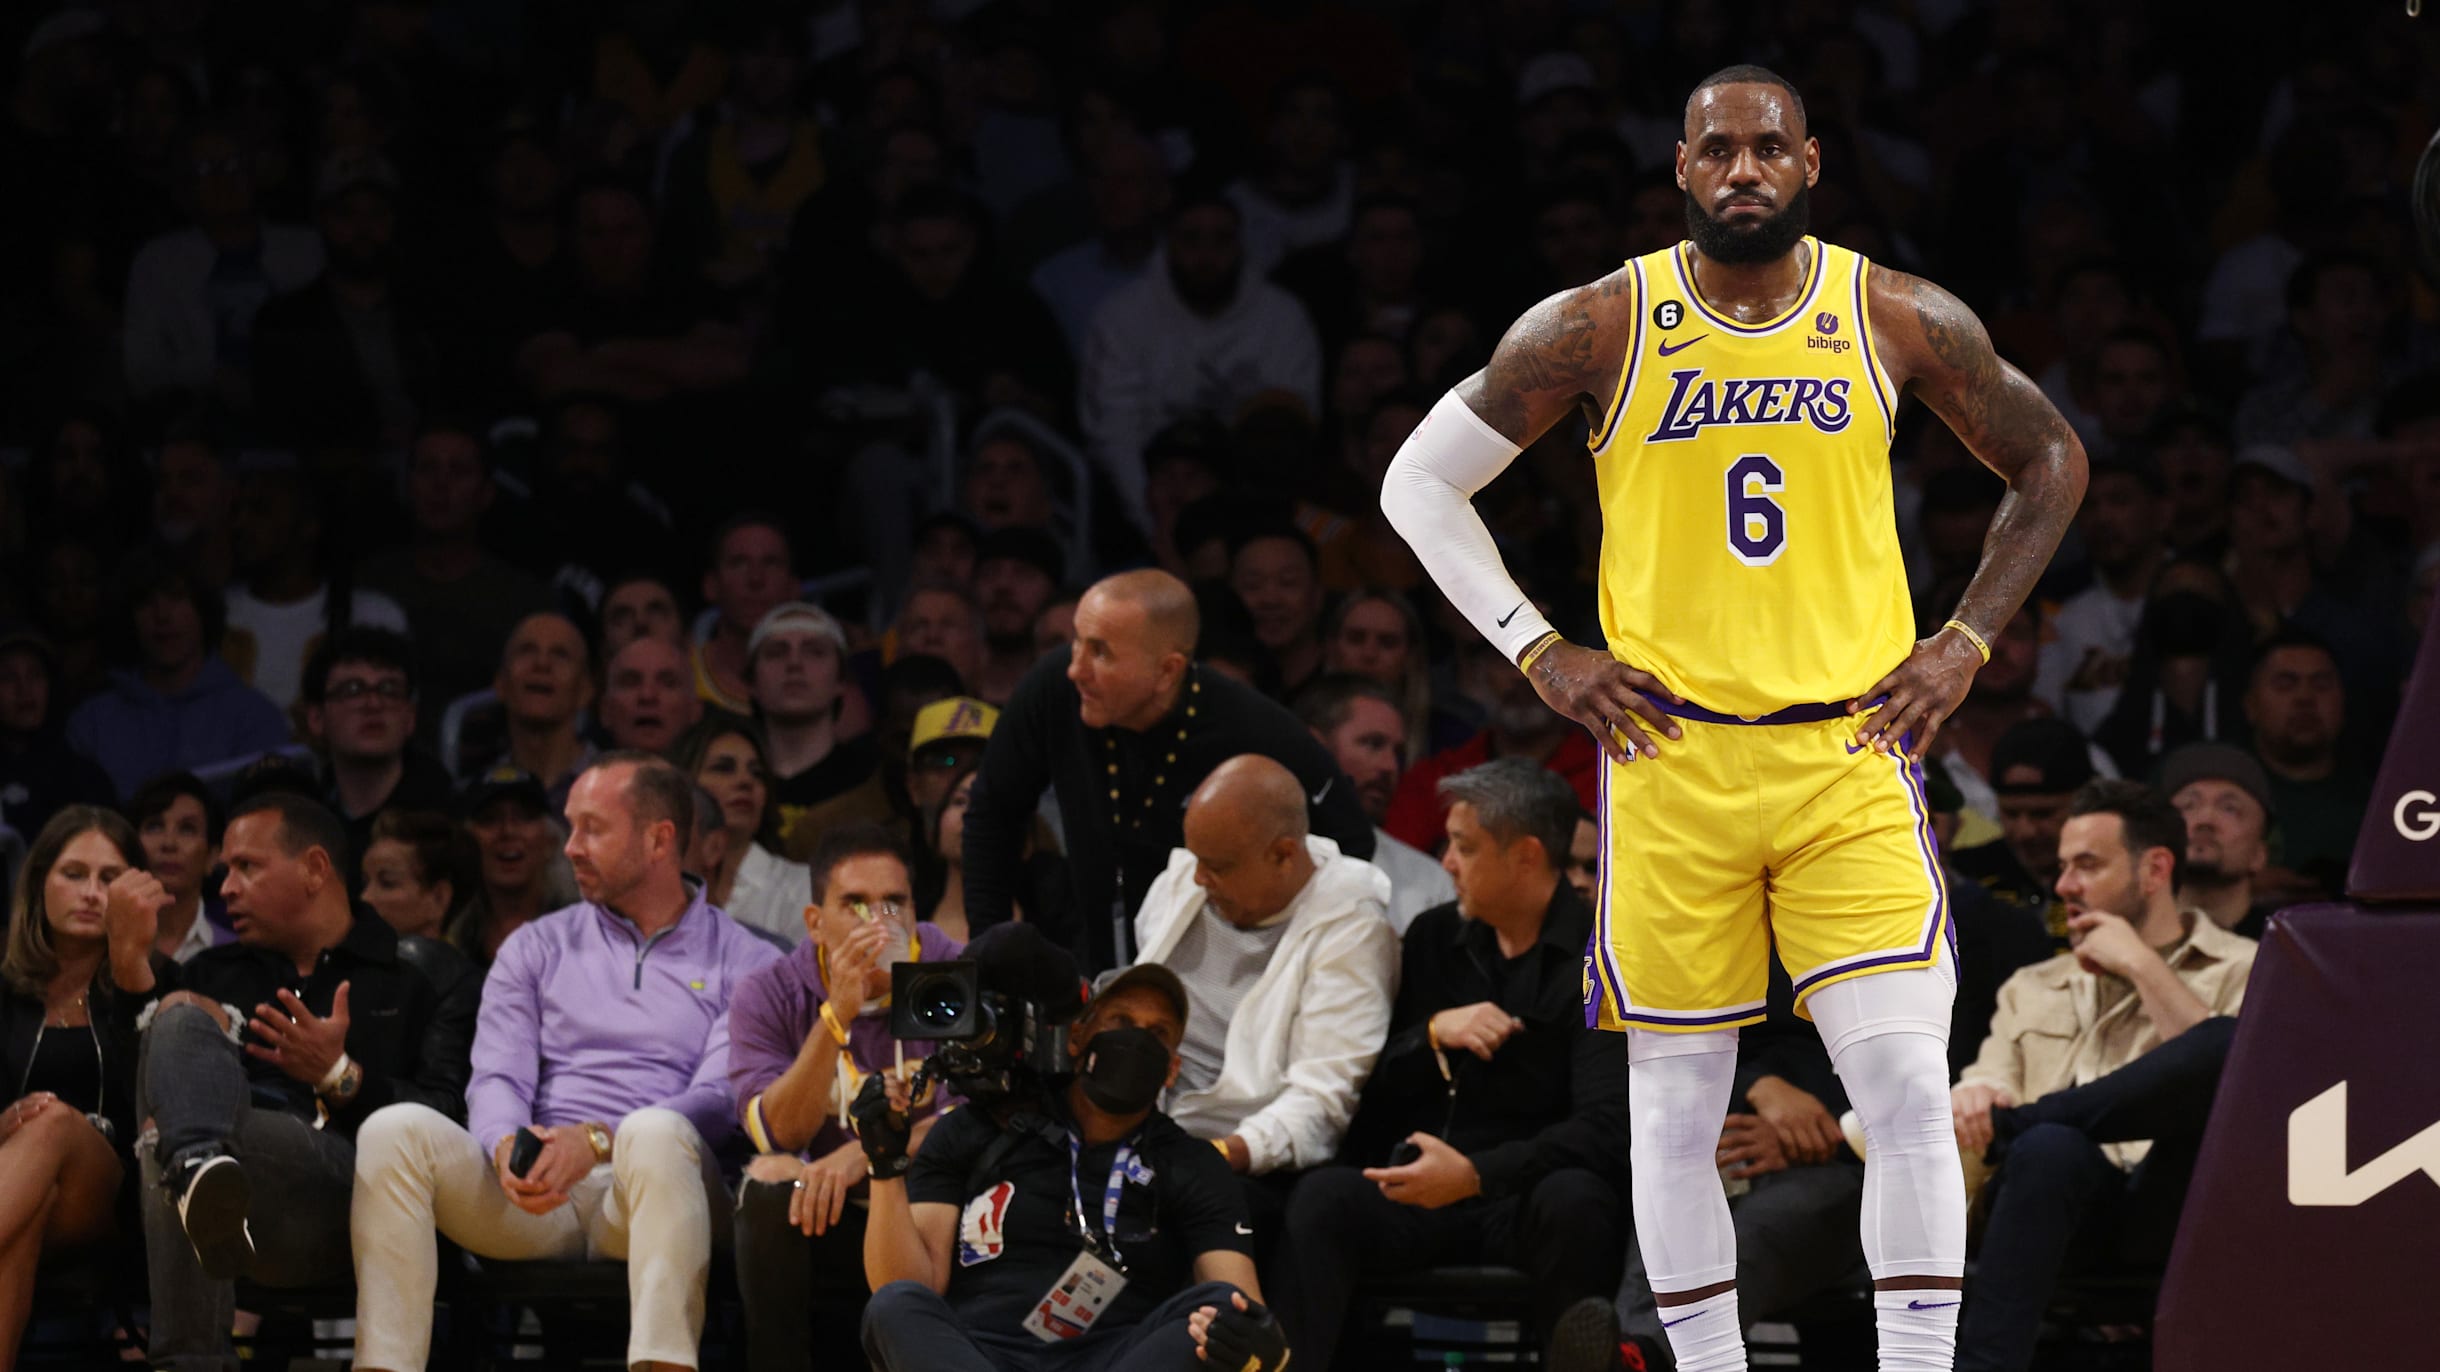 Opinião: Ser campeão do mundo da NBA não basta mais para os EUA no  basquete